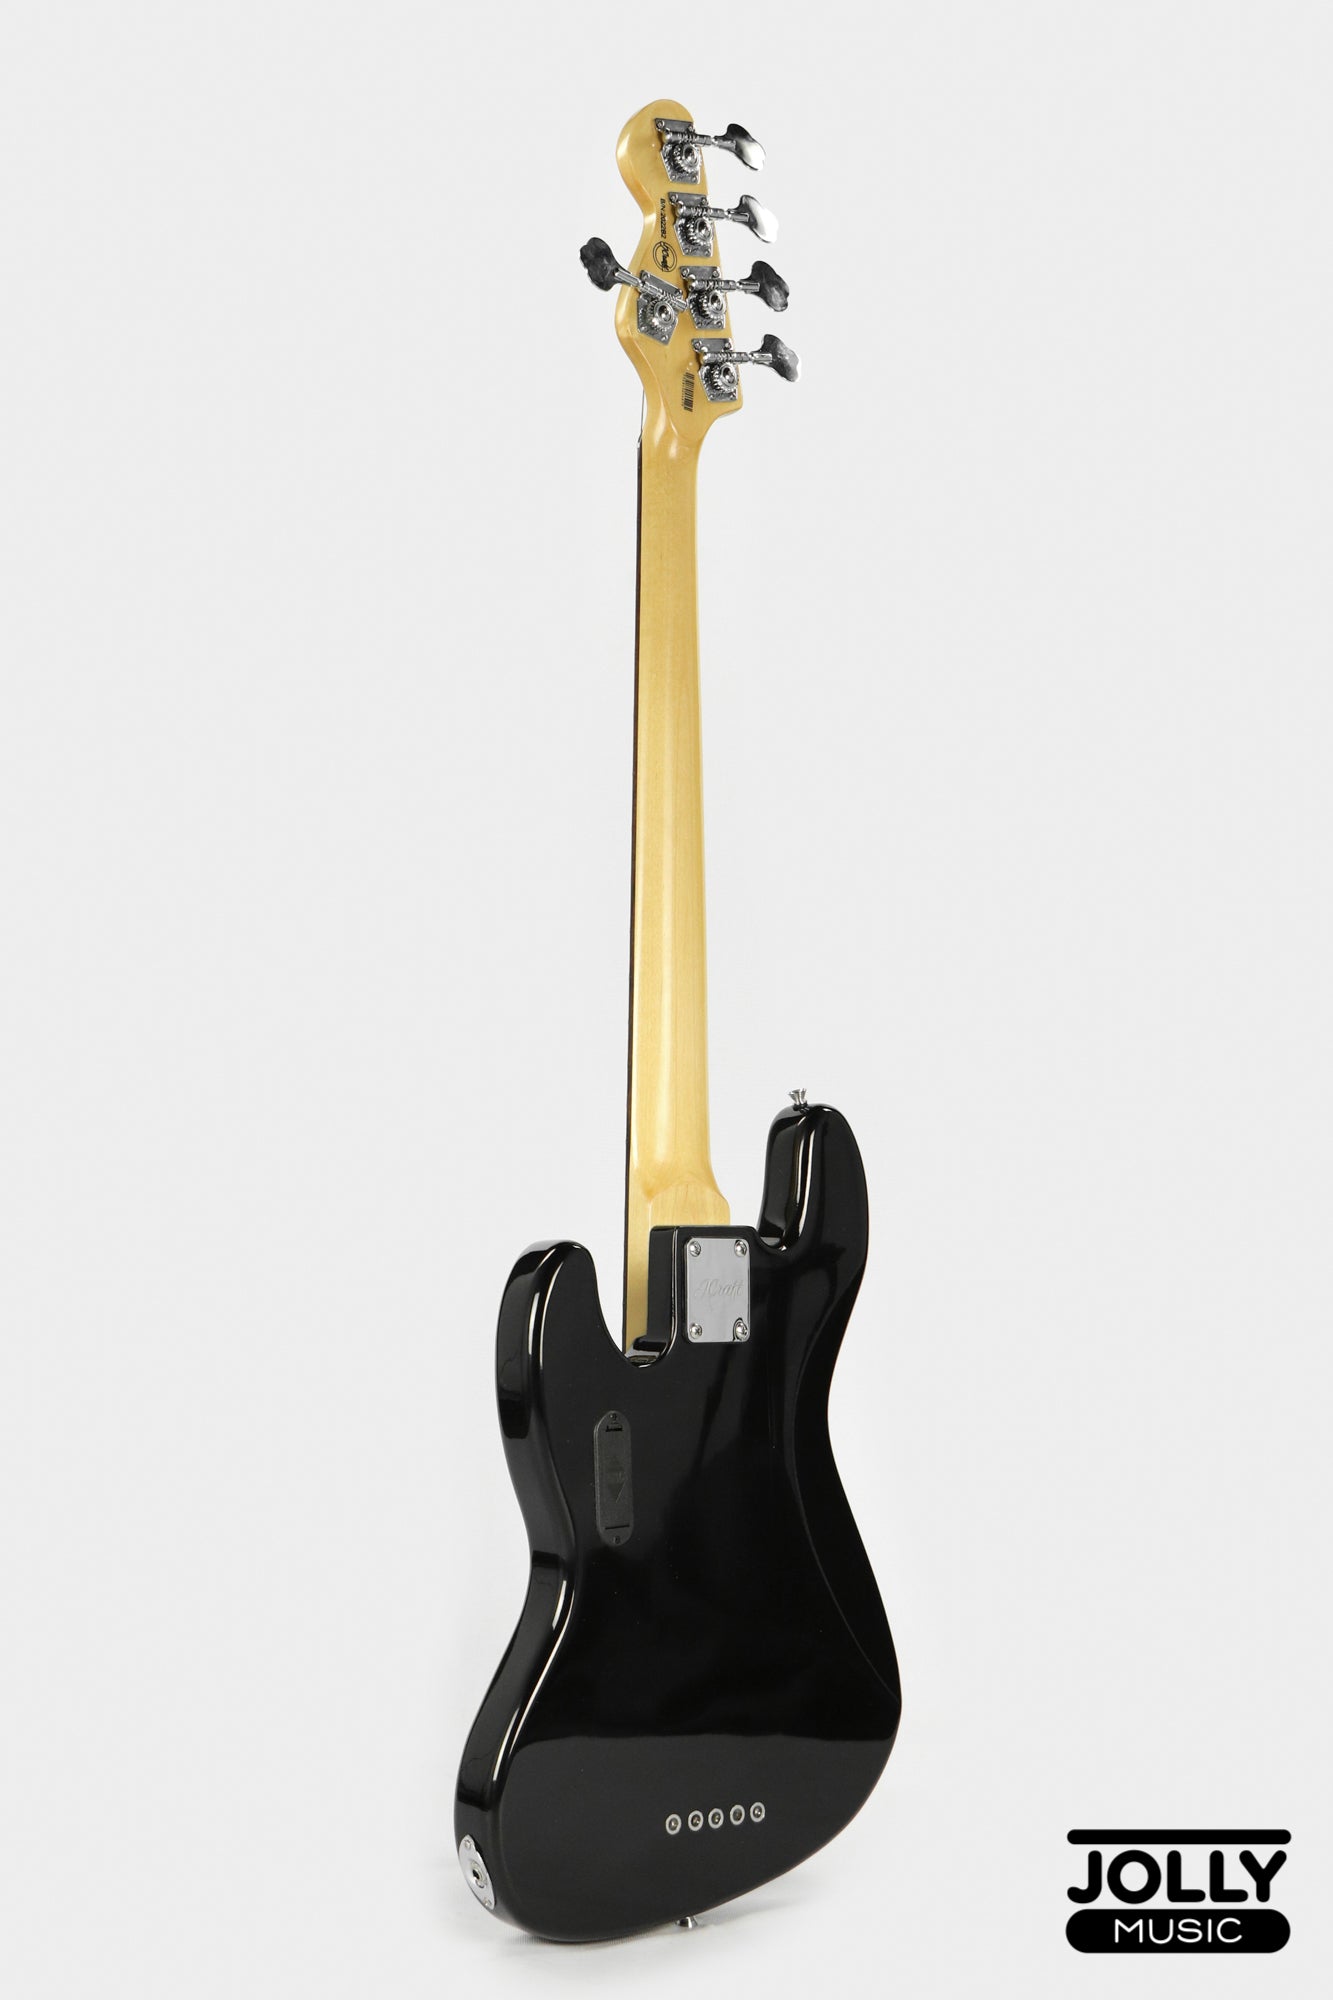 JCraft JB-2A J-Offset 5-String Bass Guitar - Black